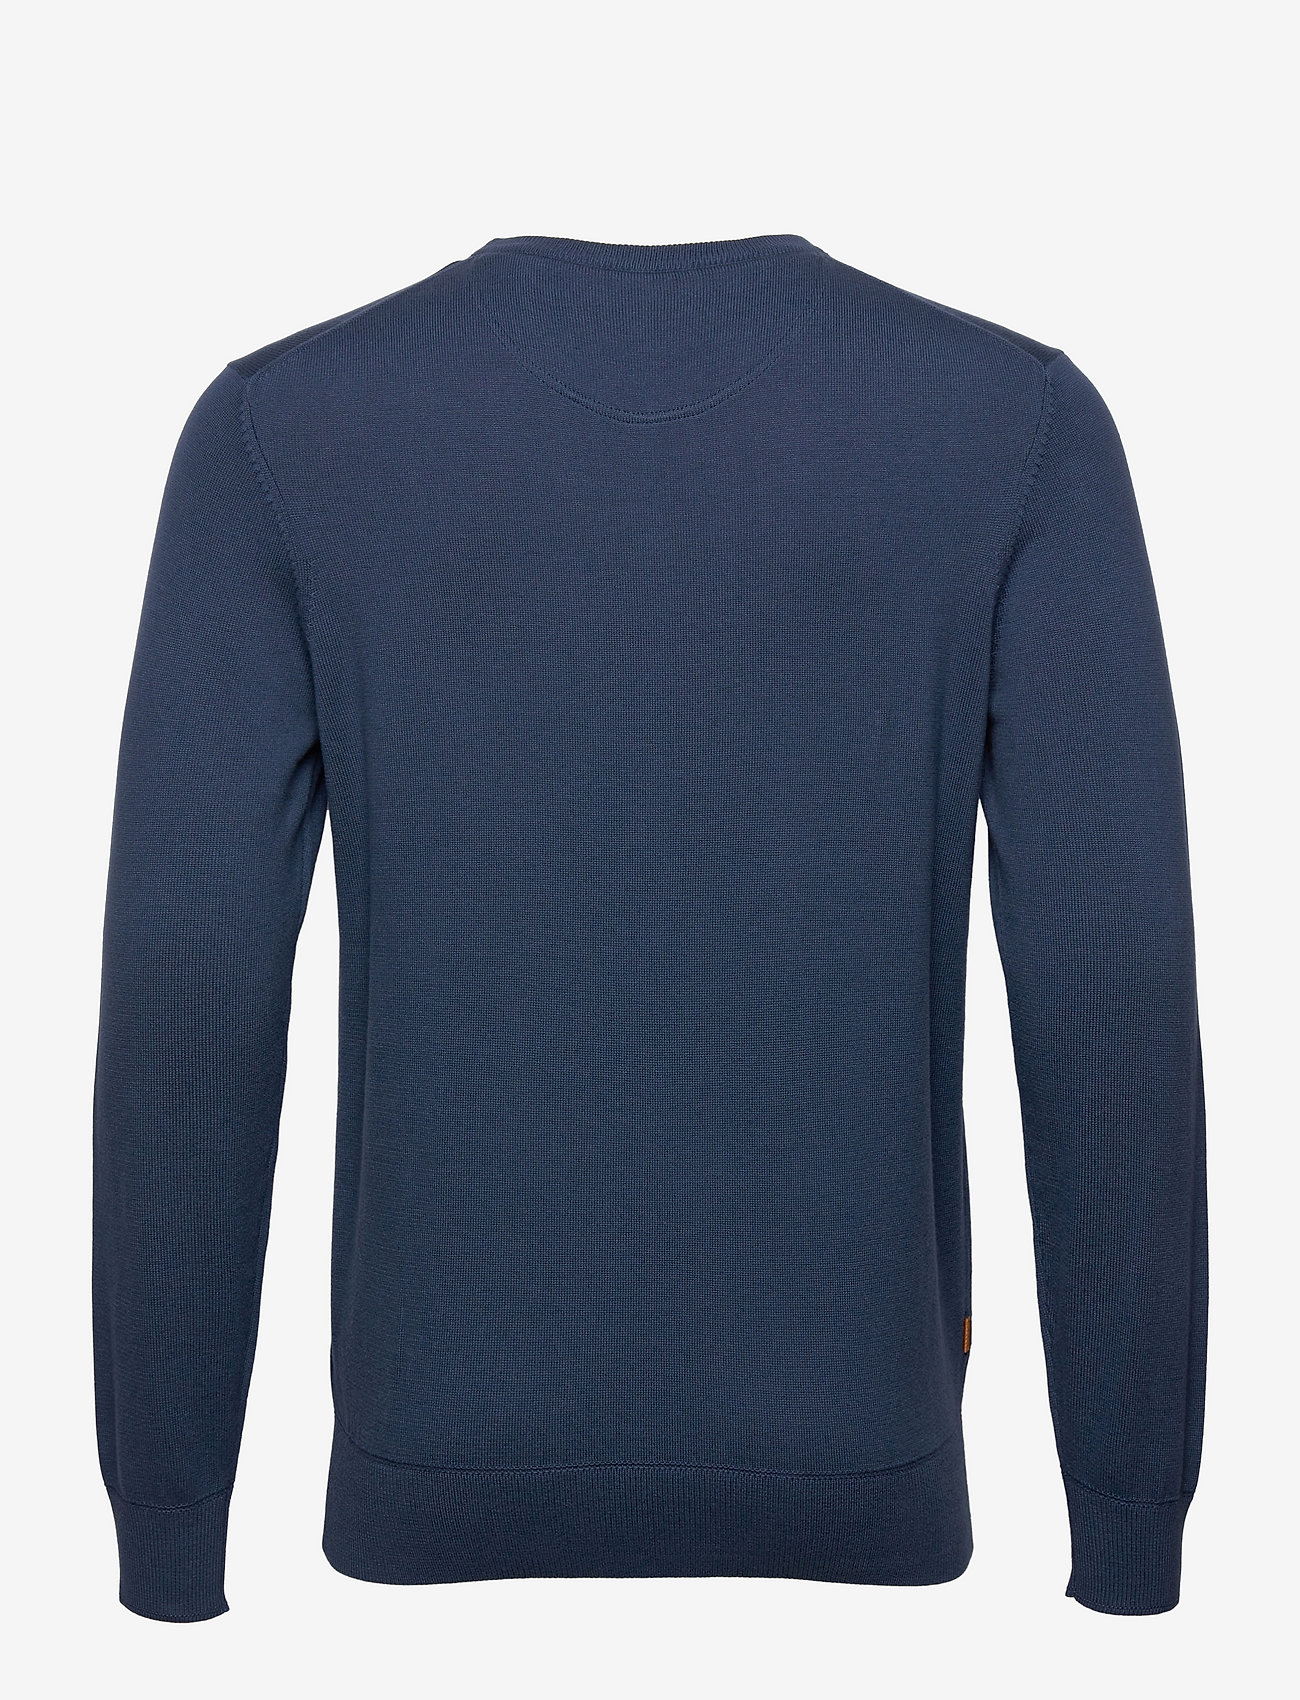 Timberland - WILLIAMS RIVER Cotton YD Sweater DARK DENIM - basic-strickmode - dark denim - 1